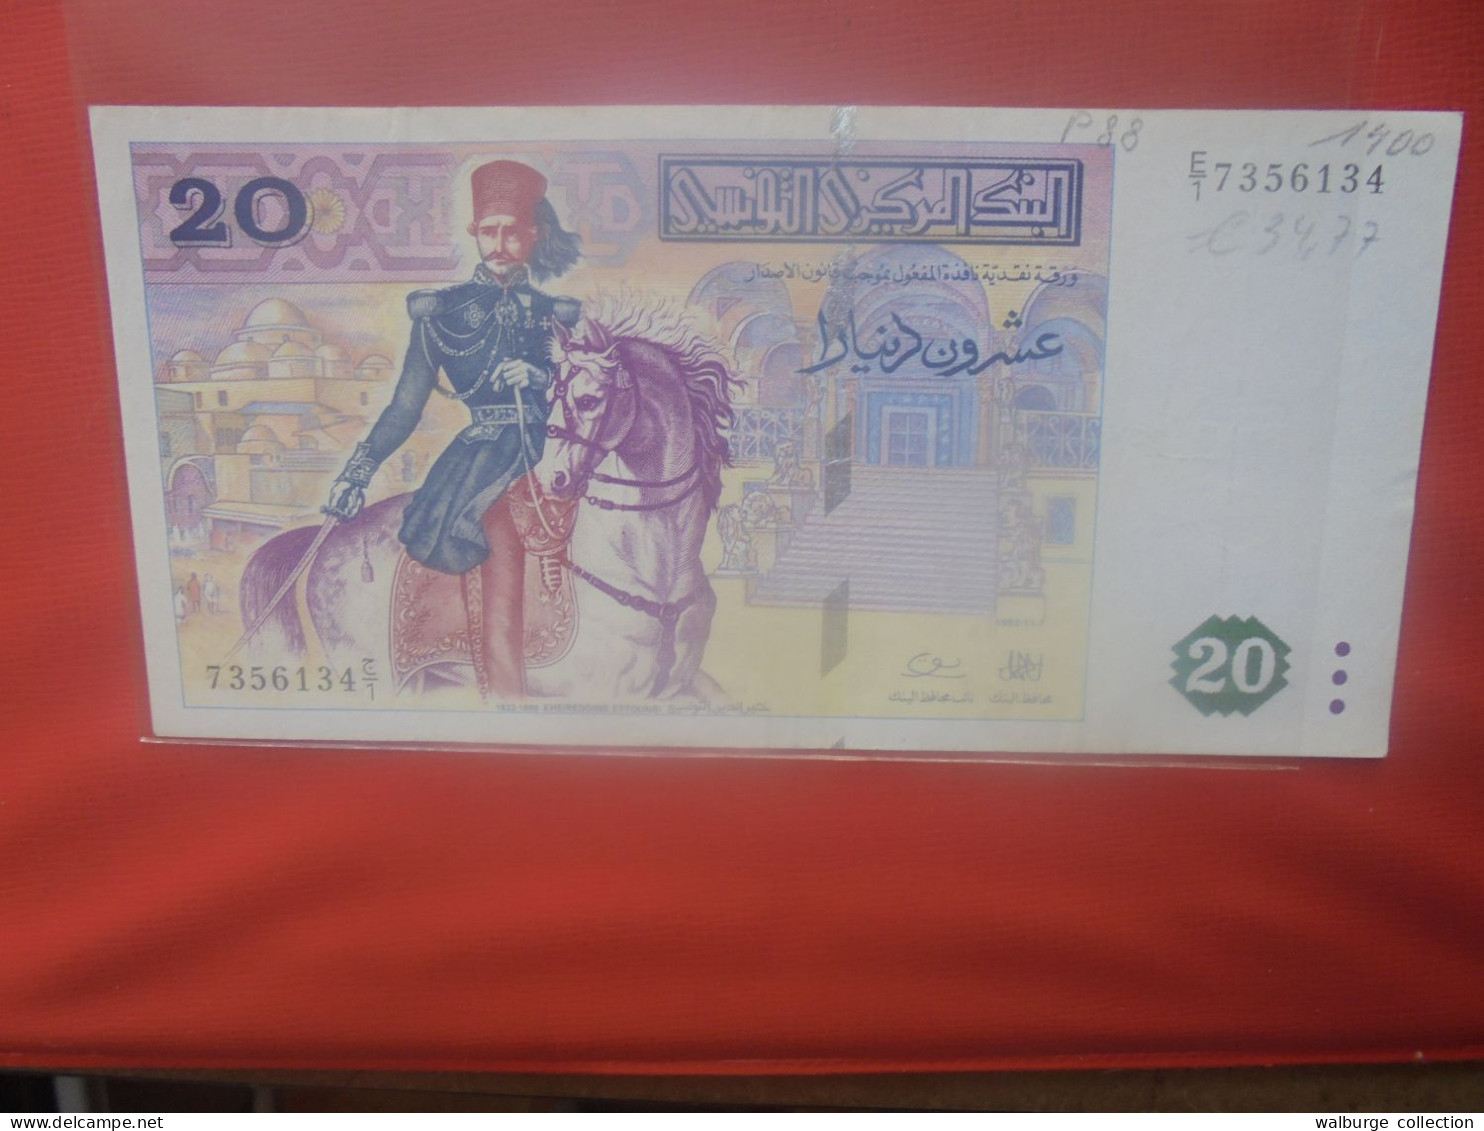 TUNISIE 20 DINARS 1992 Circuler (B.30) - Tunisie